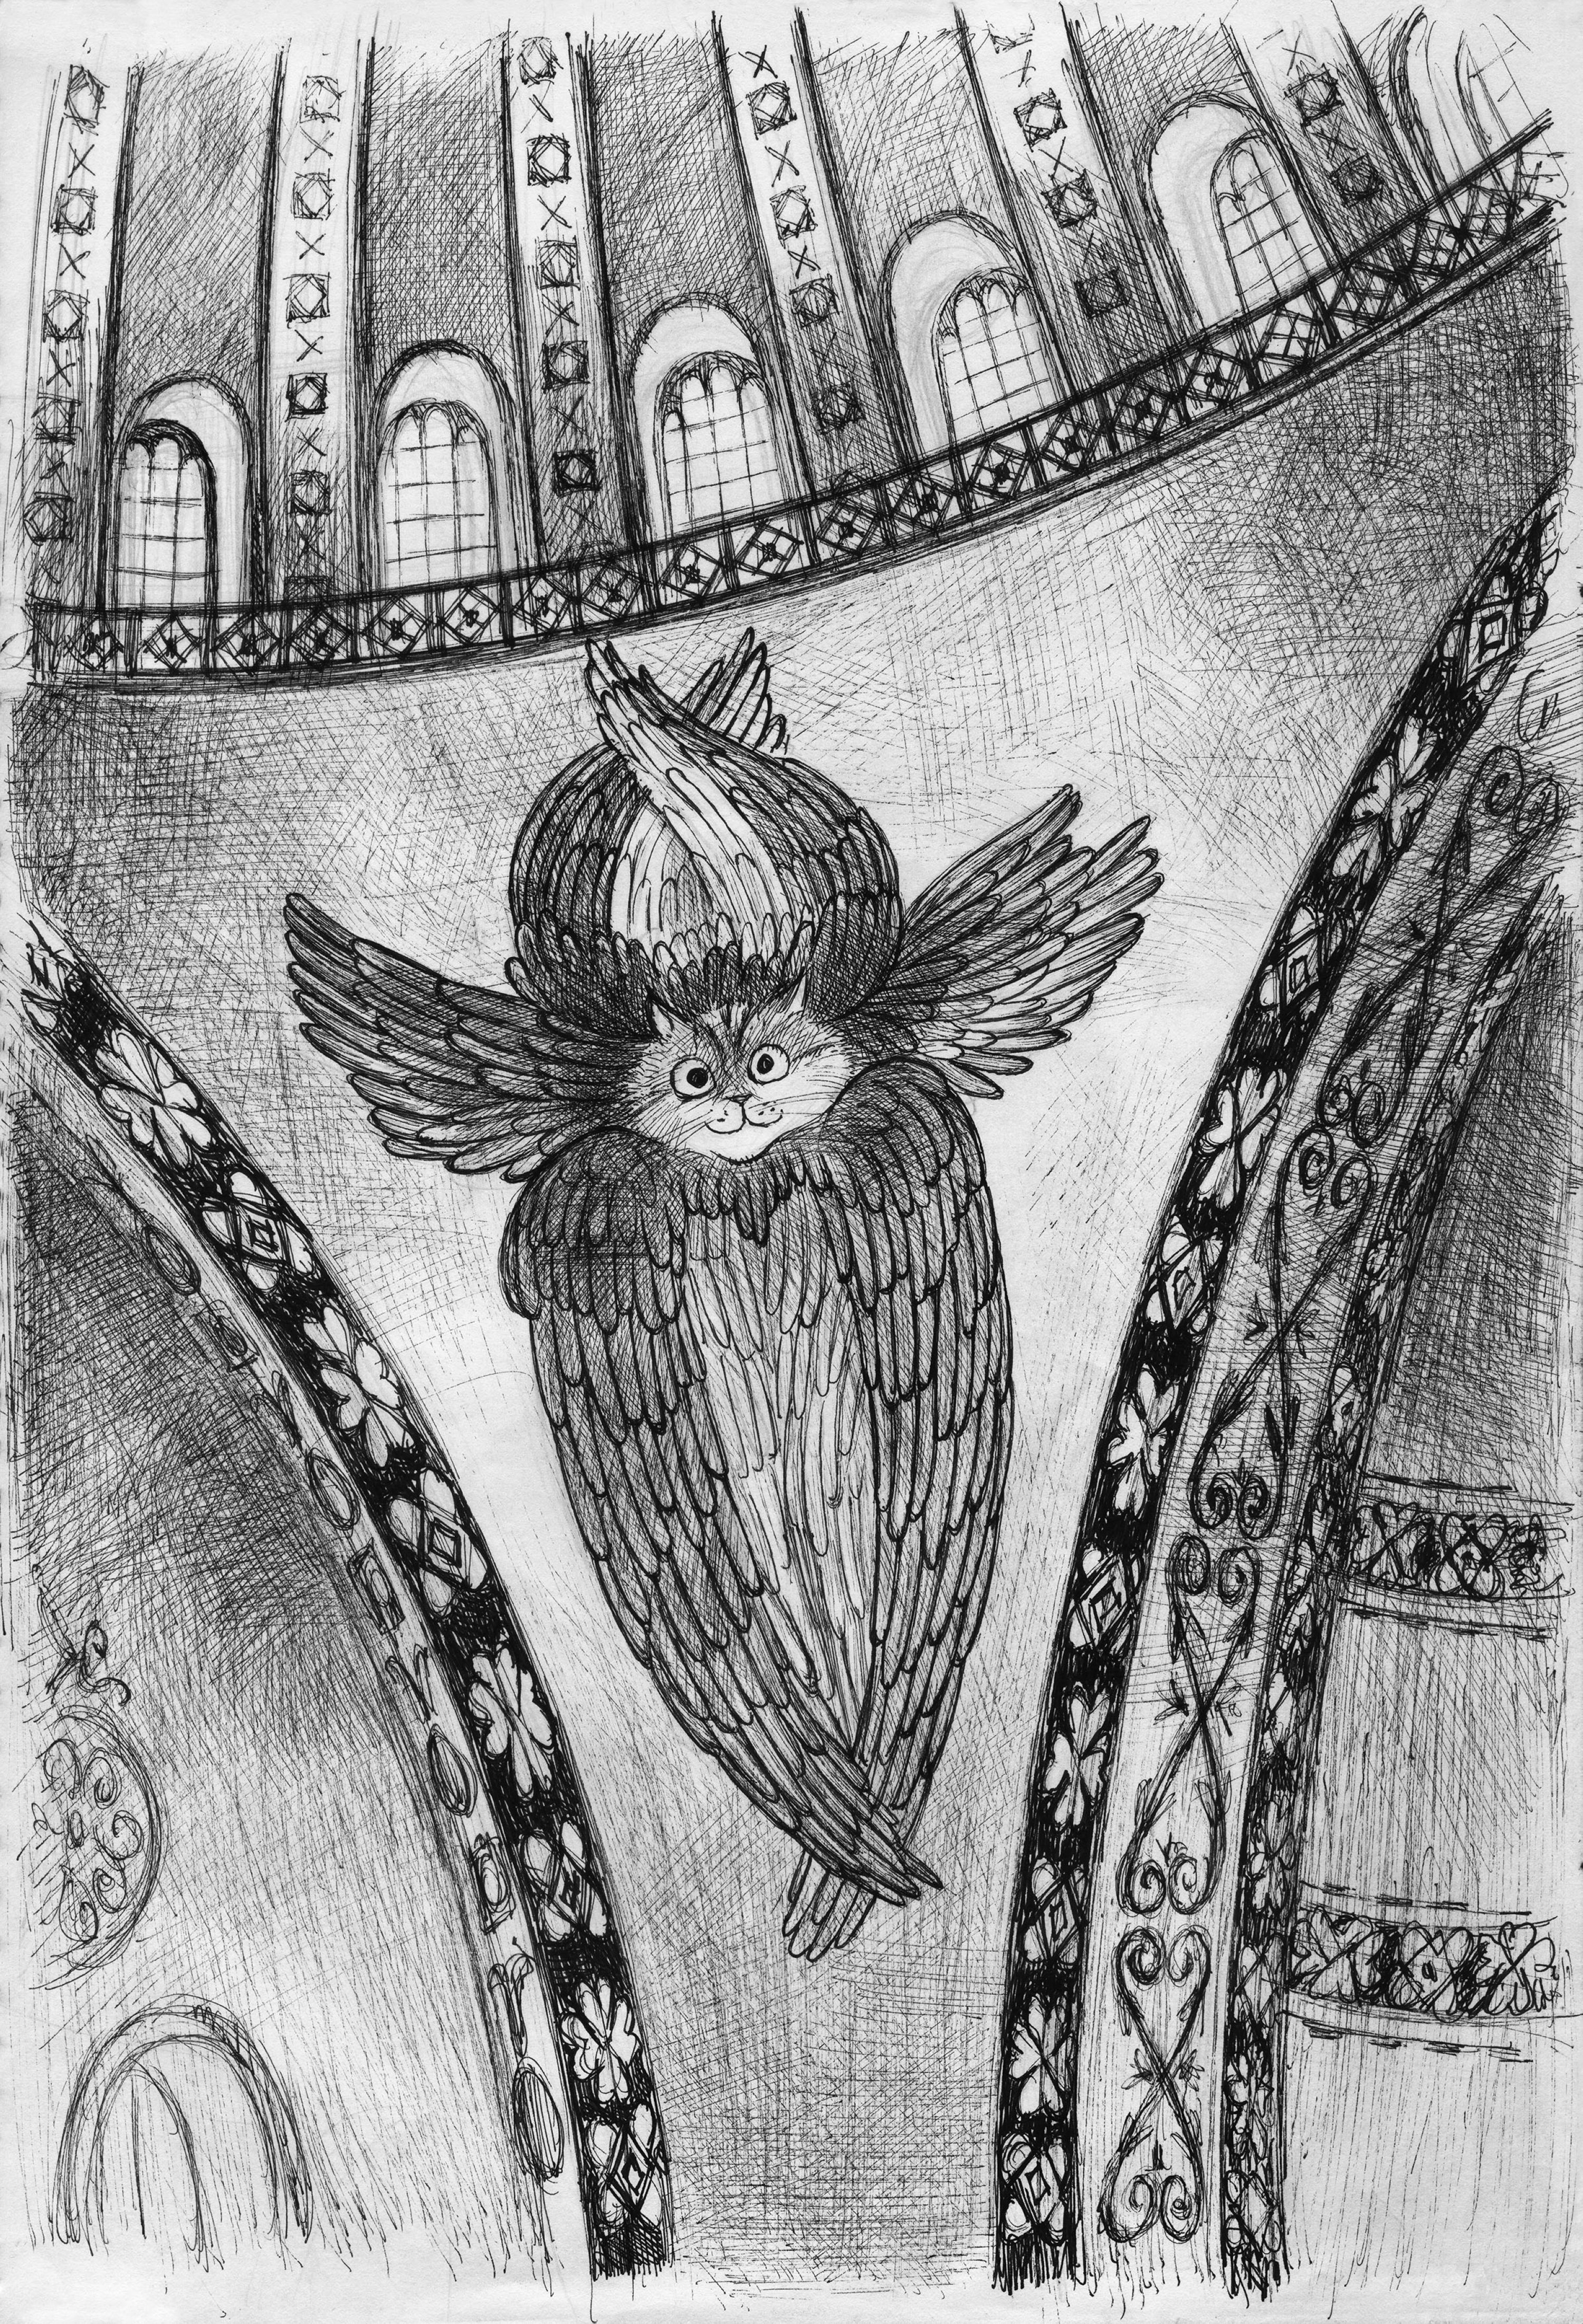 Necdet Yılmaz, 'Seraphim Gli,' 2020, 0.05 micron pencil on A4 paper. (Courtesy of Pera Museum)